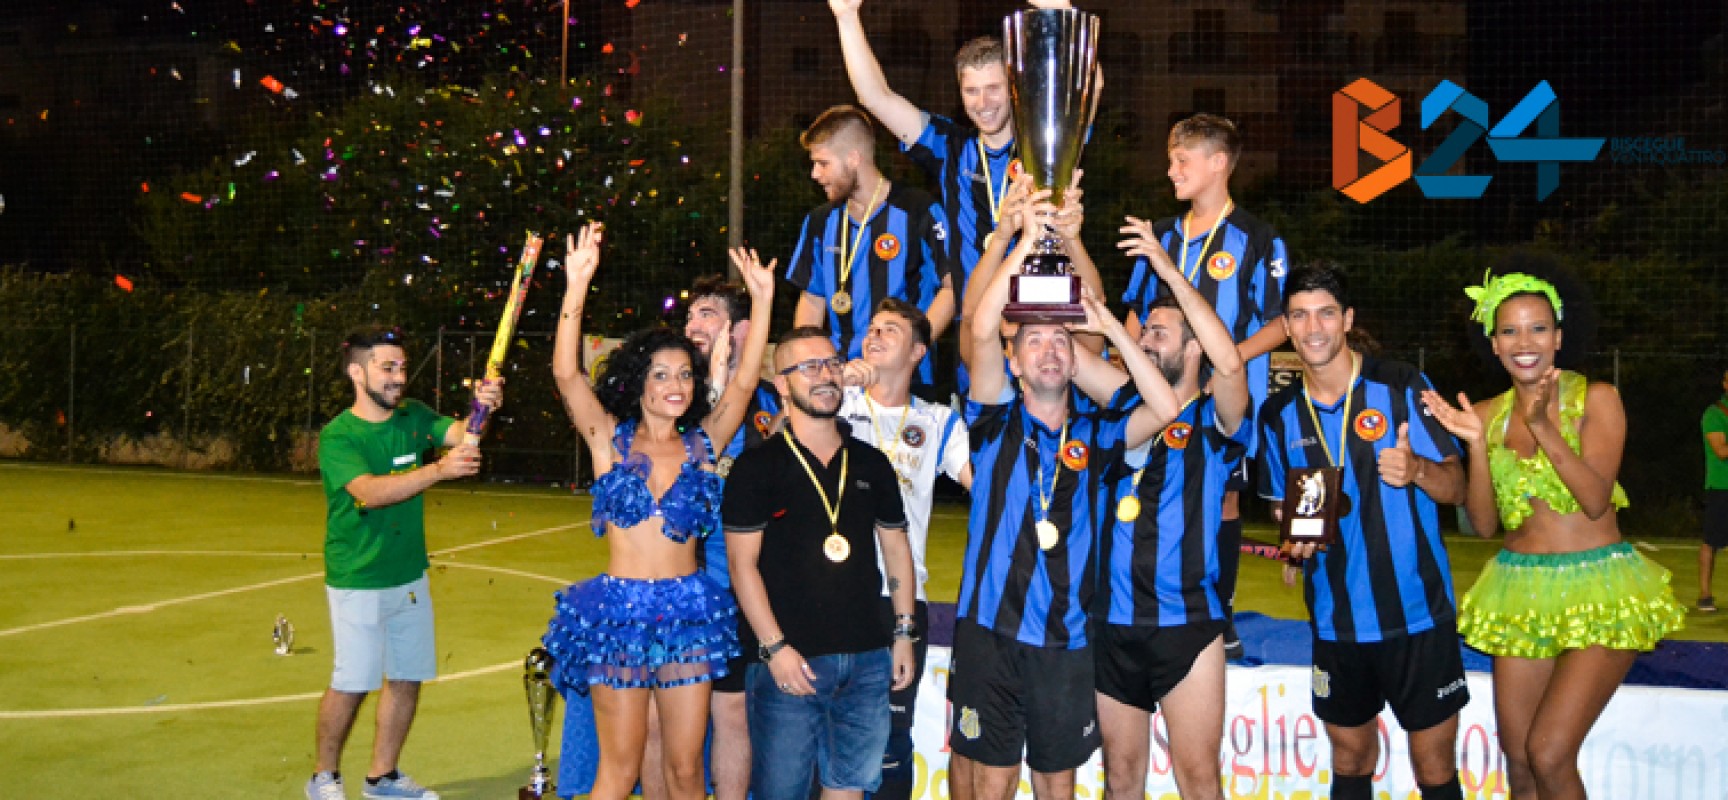 Parte questa sera il “Trofeo Bisceglie24”, torneo di calcio a 5 giovanile giunto alla 13esima edizione